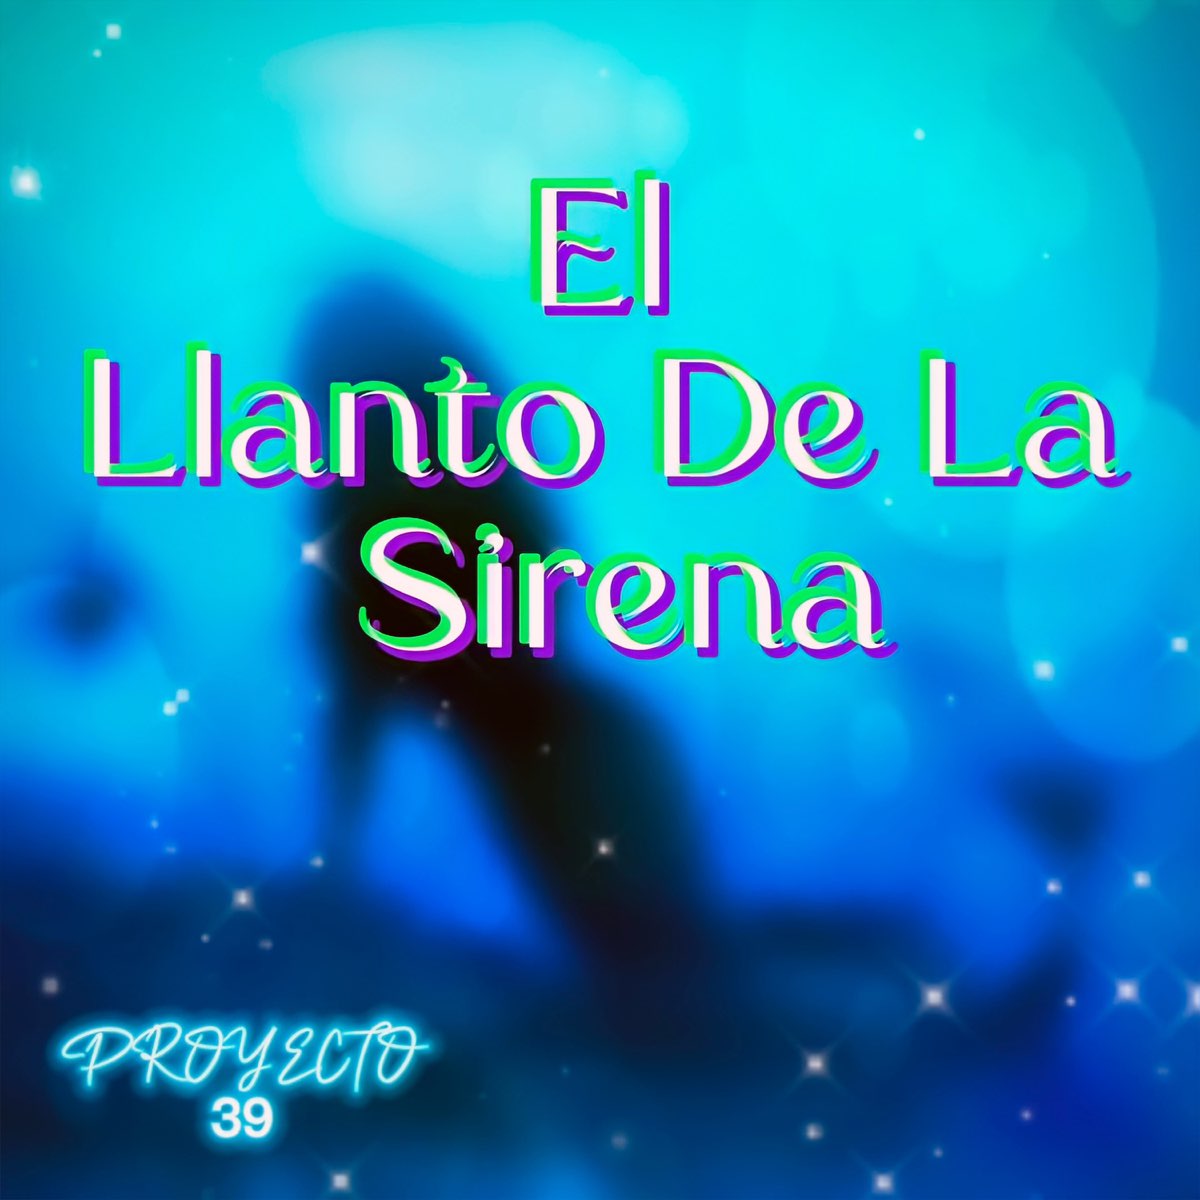 El Llanto De La Sirena - Single by Proyecto 39 on Apple Music